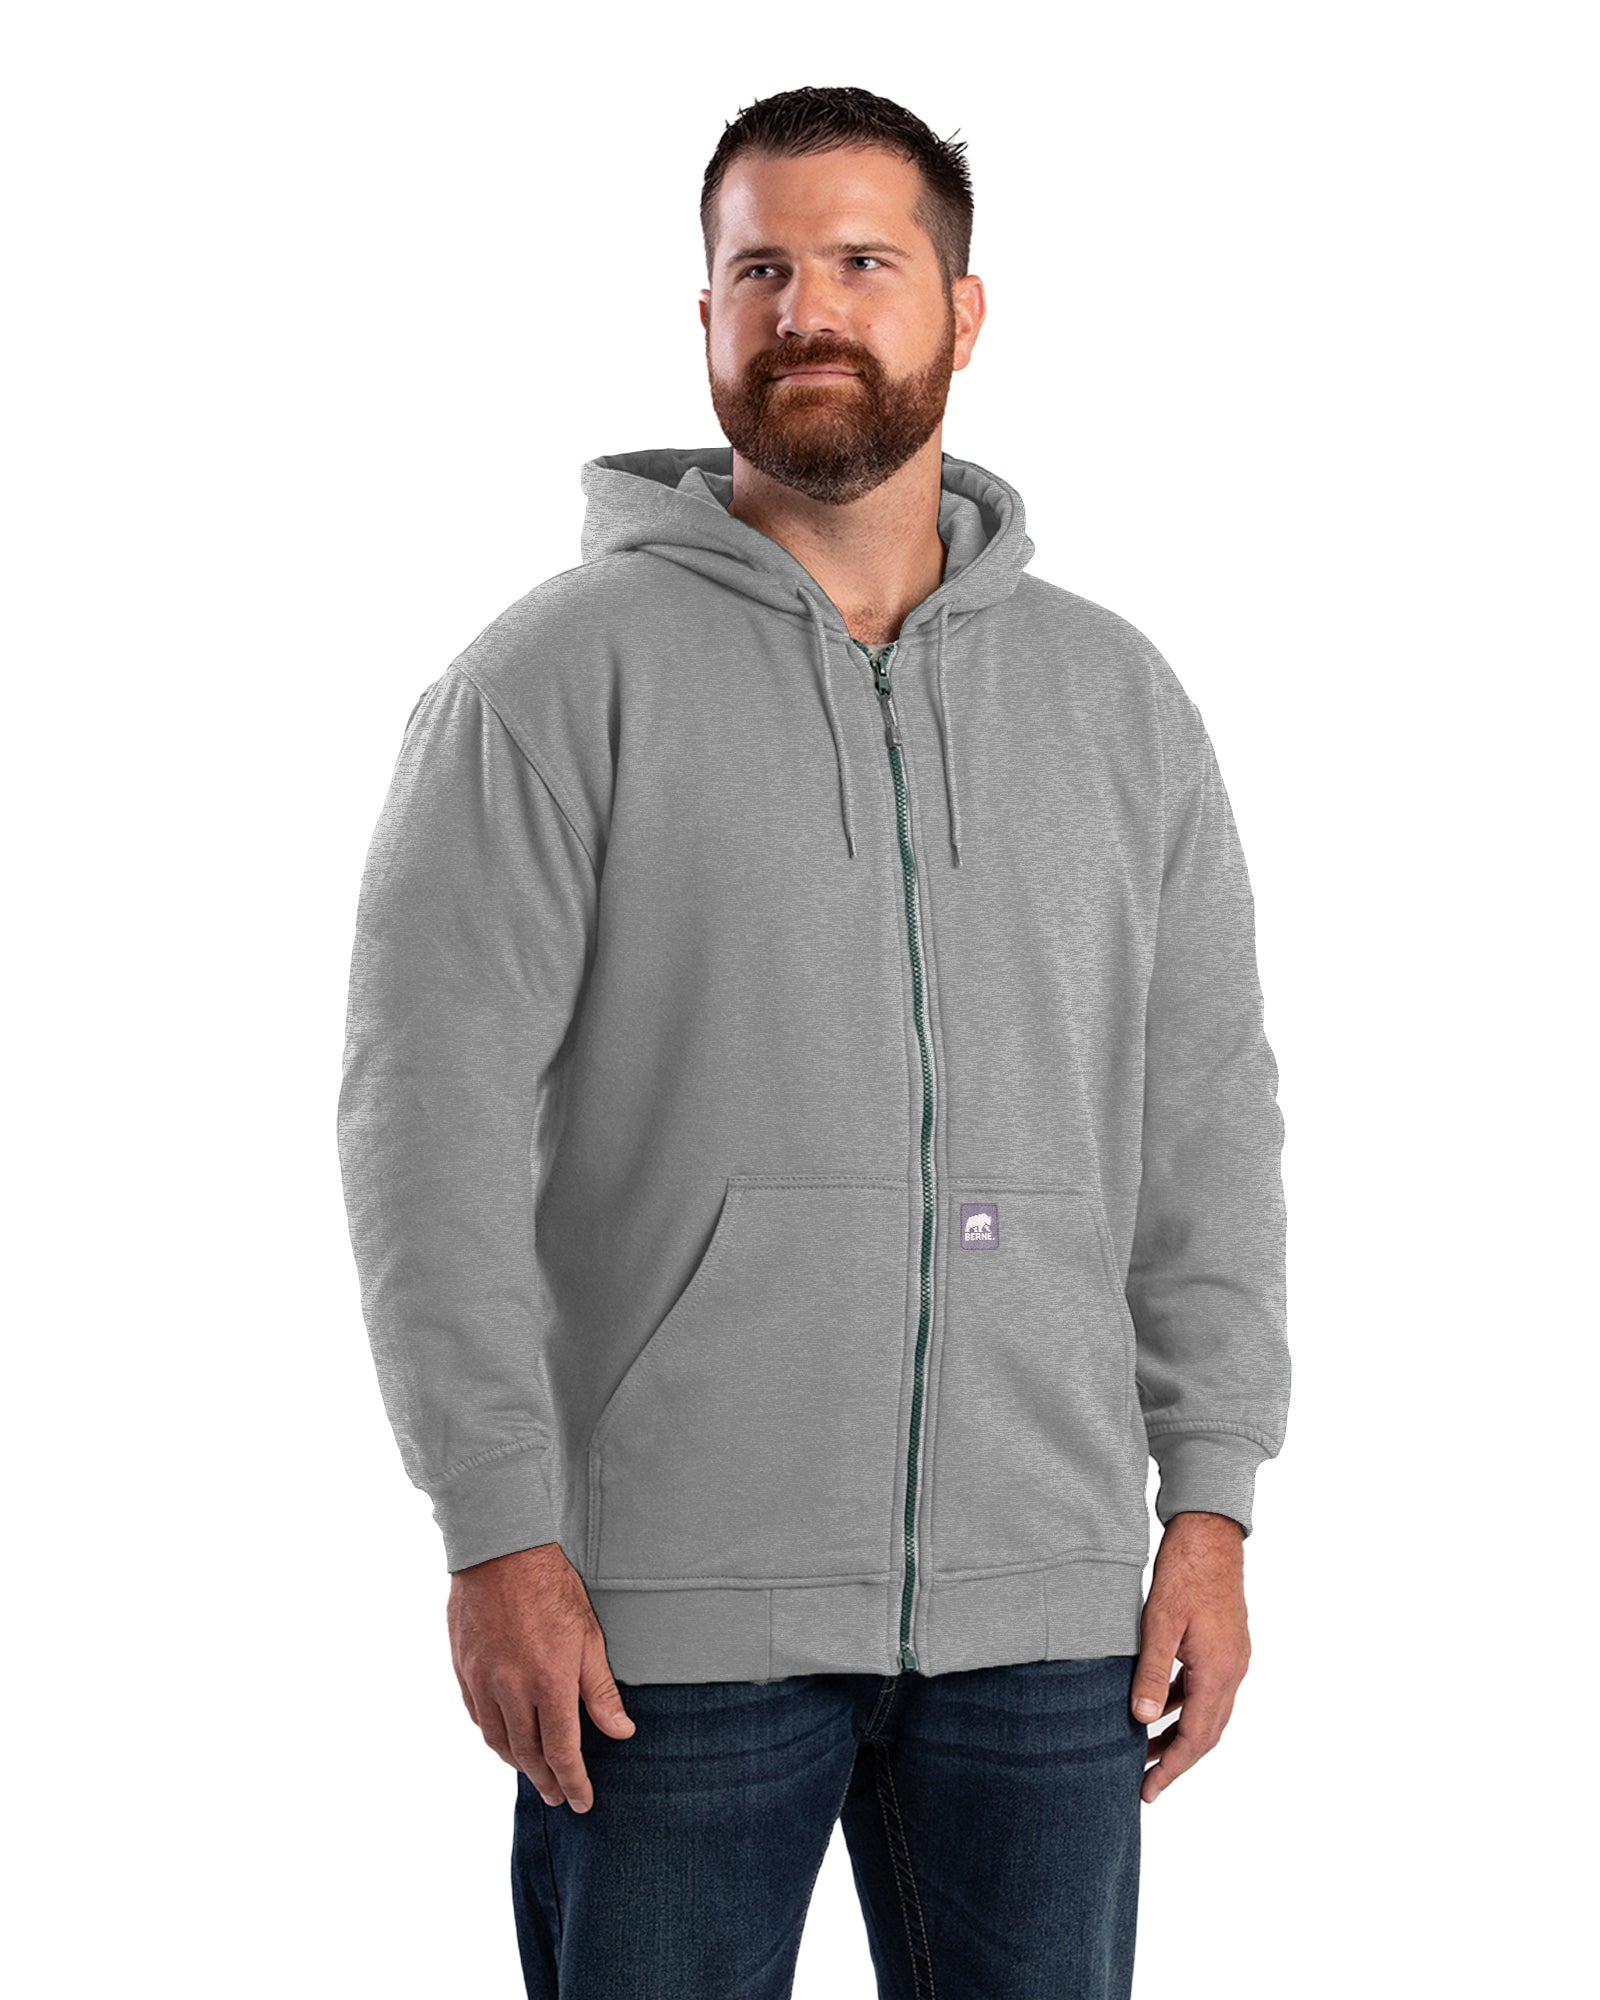 Men's Thermal Hoodies/Sweatshirt Hoodies